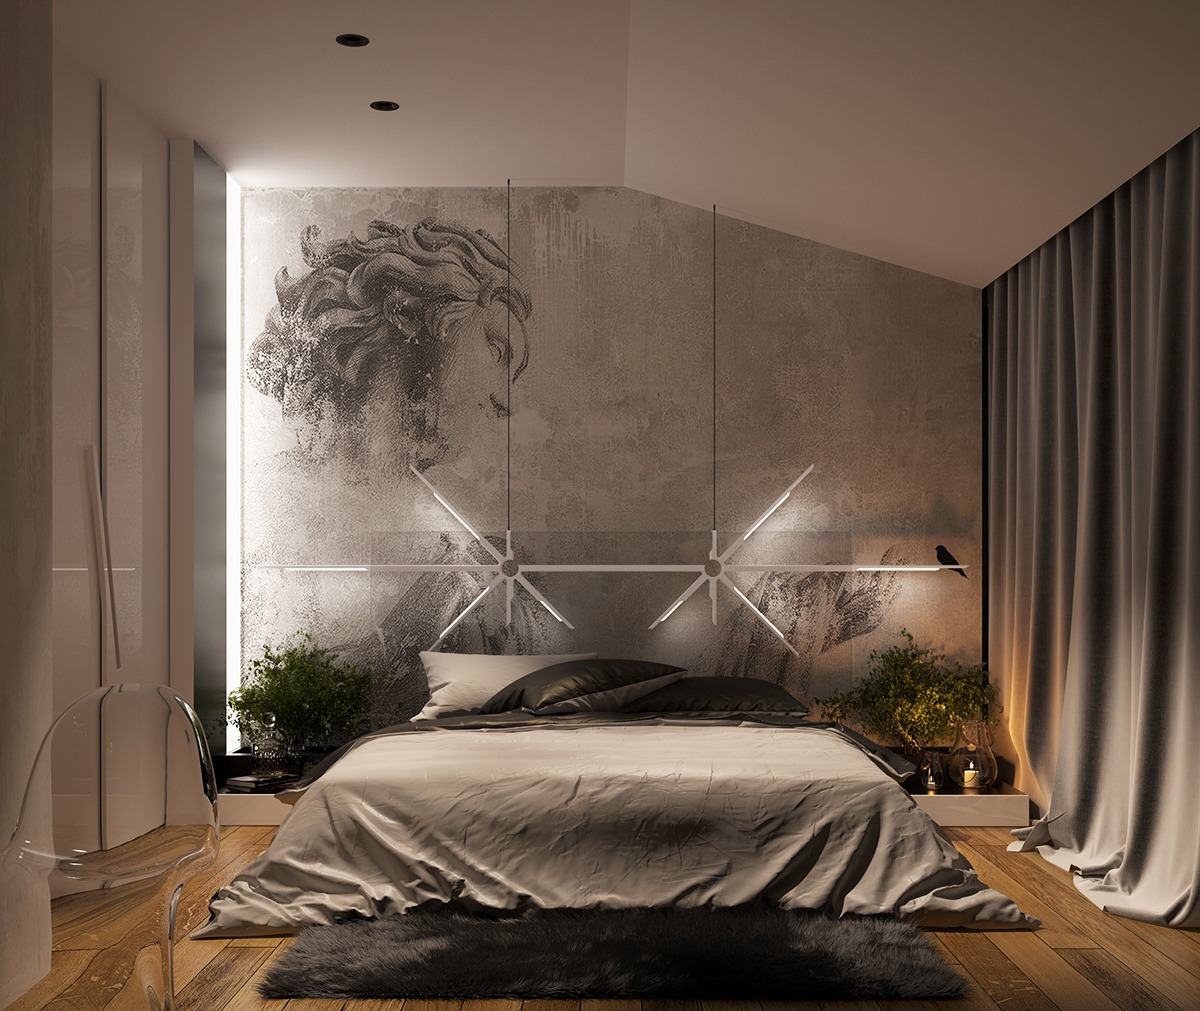 Wedo thiết kế nội thất phòng ngủ sáng tạo cho nhà đẹp với màu trung tính tinh tế